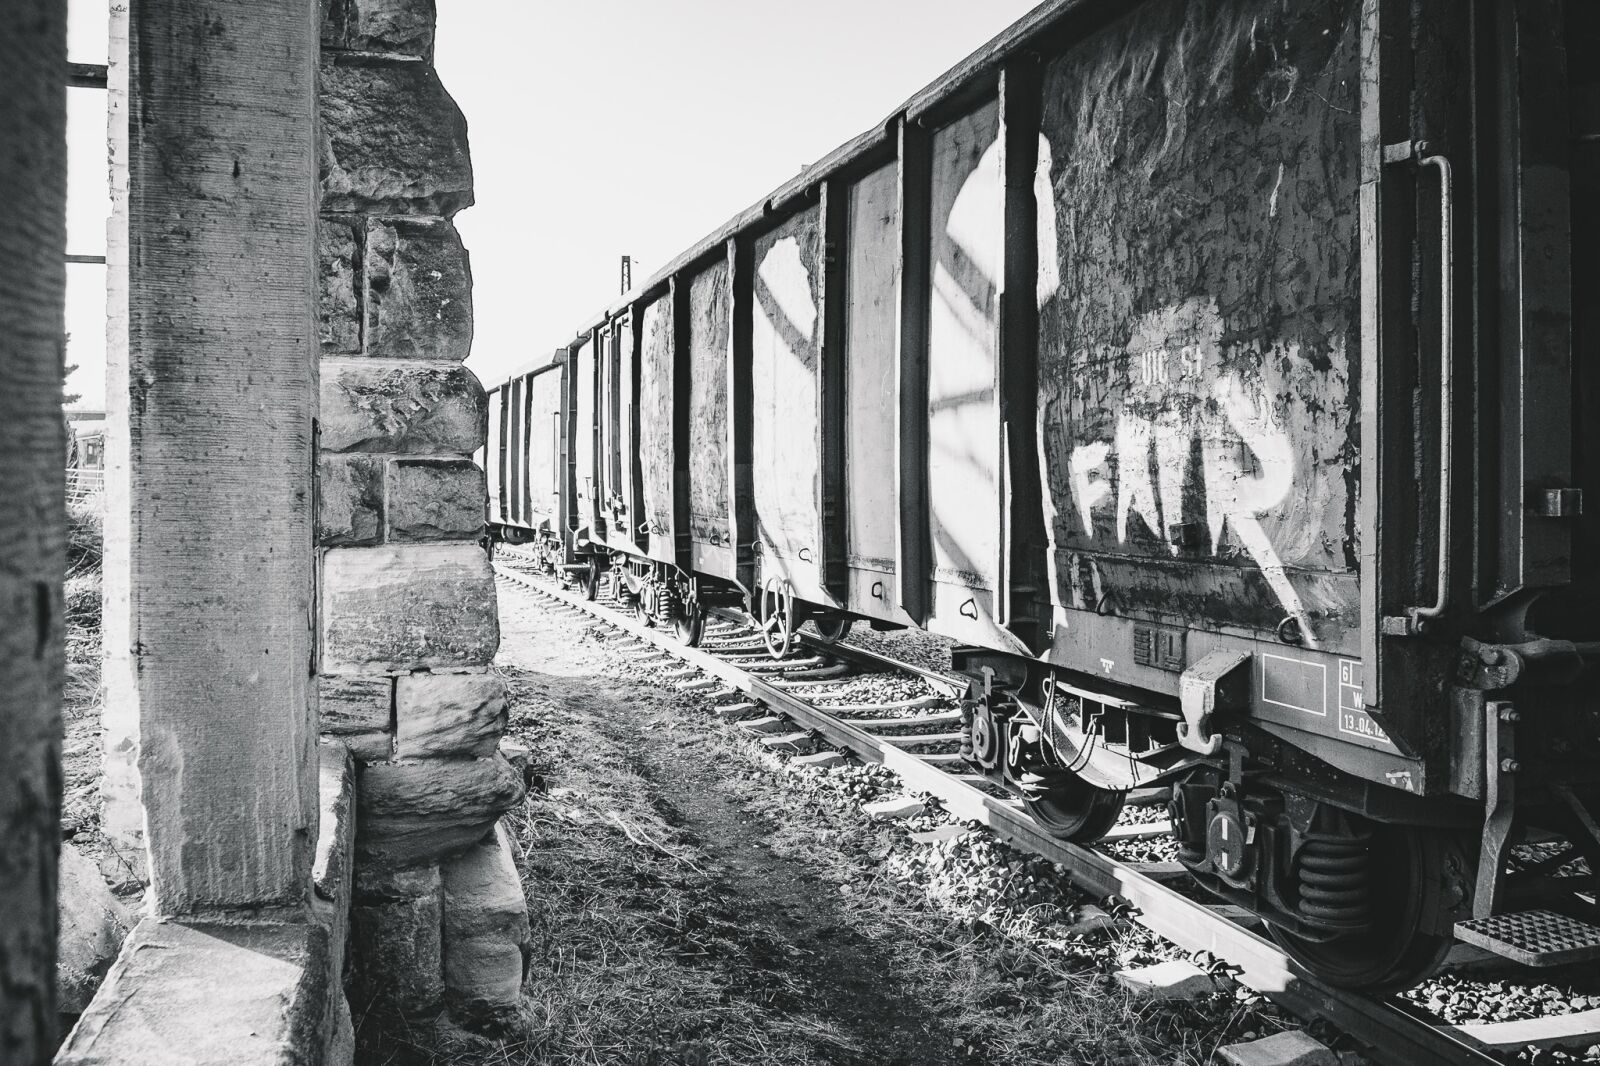 Fujifilm X-E1 sample photo. Wagon, train, compartment photography